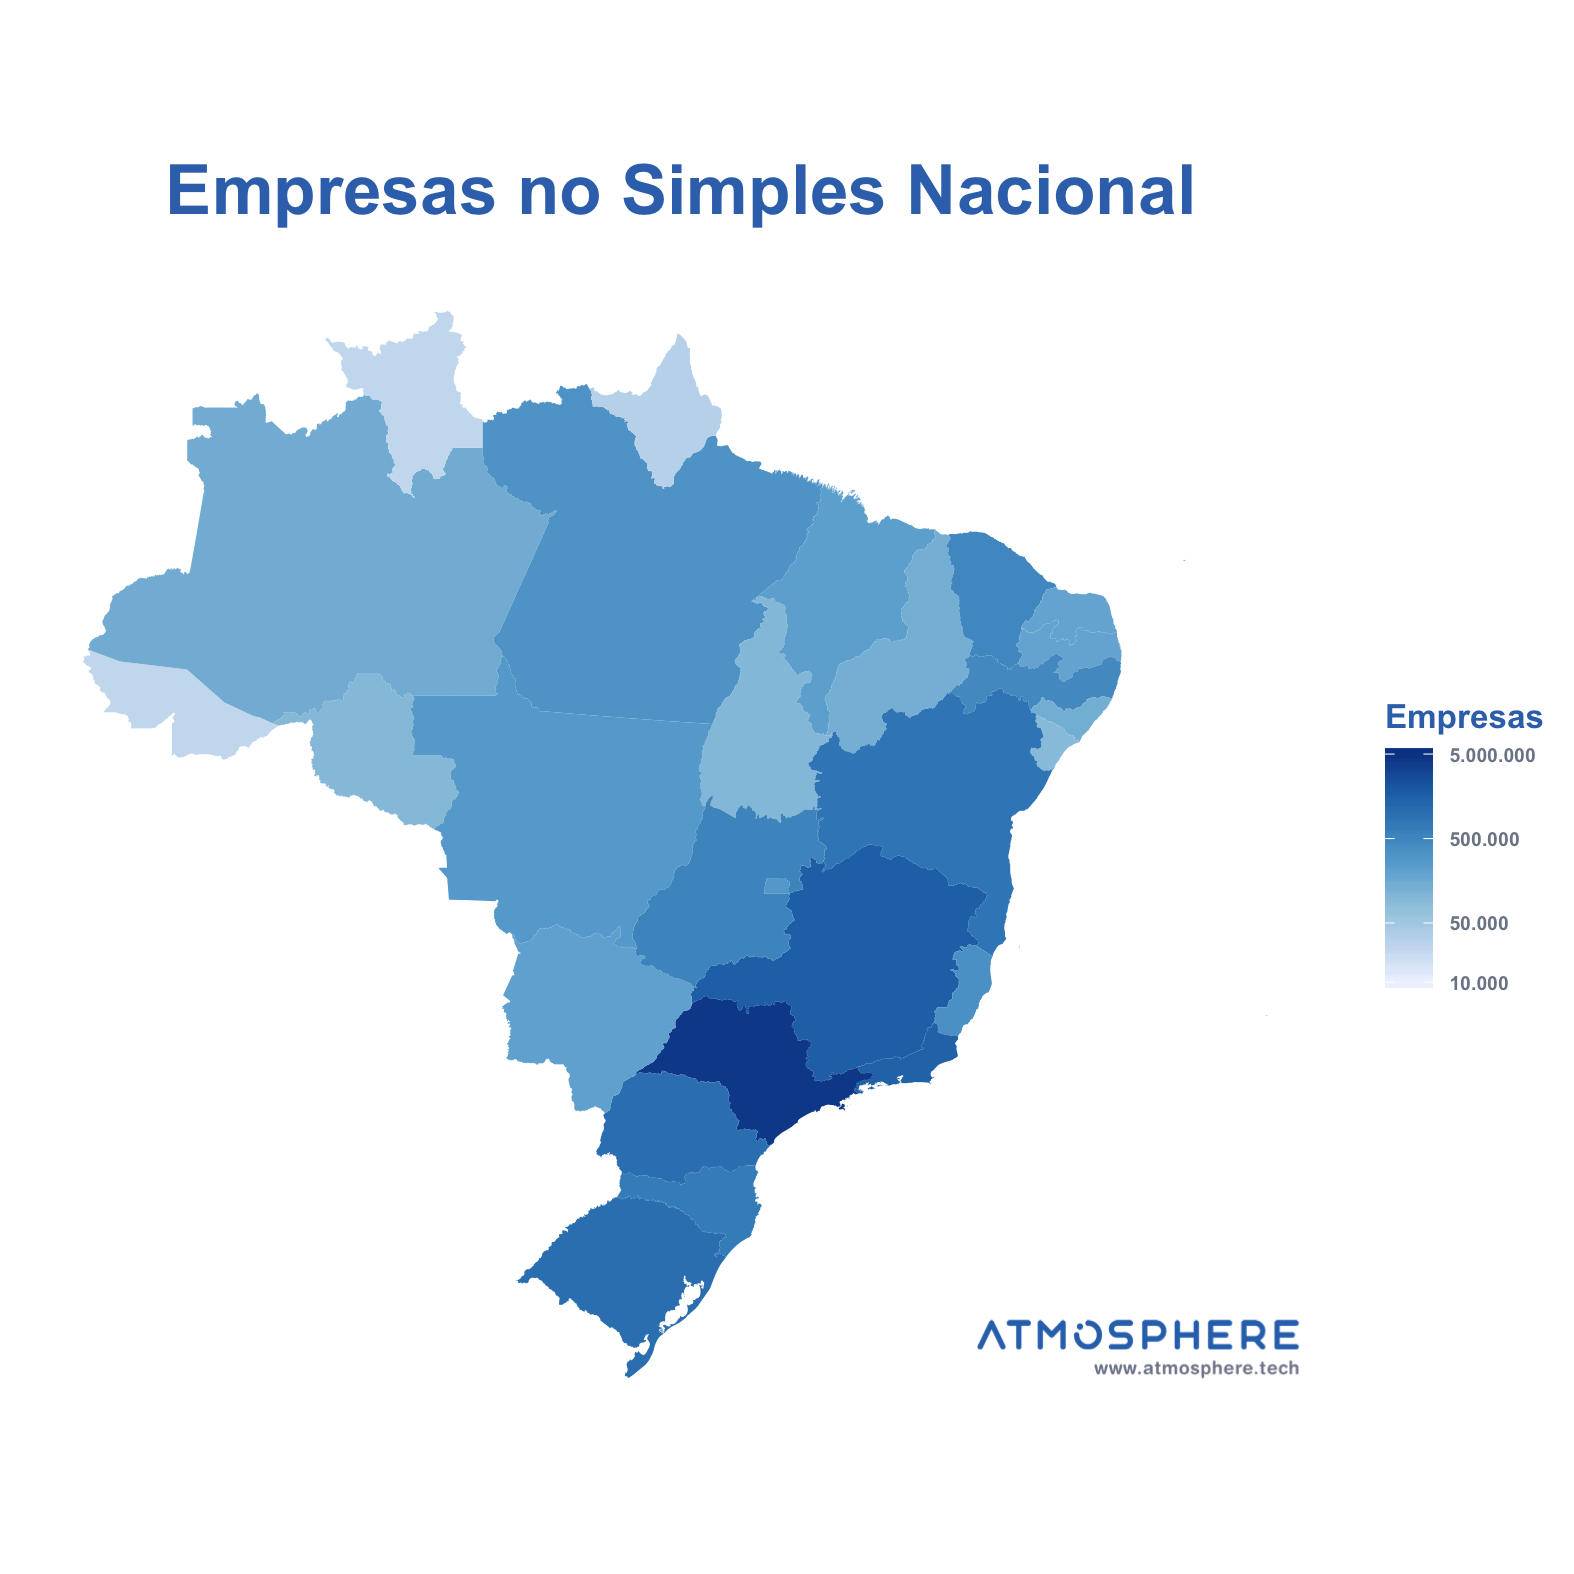 Oportunidados Empresas no Simples Nacional por Estado no Brasil